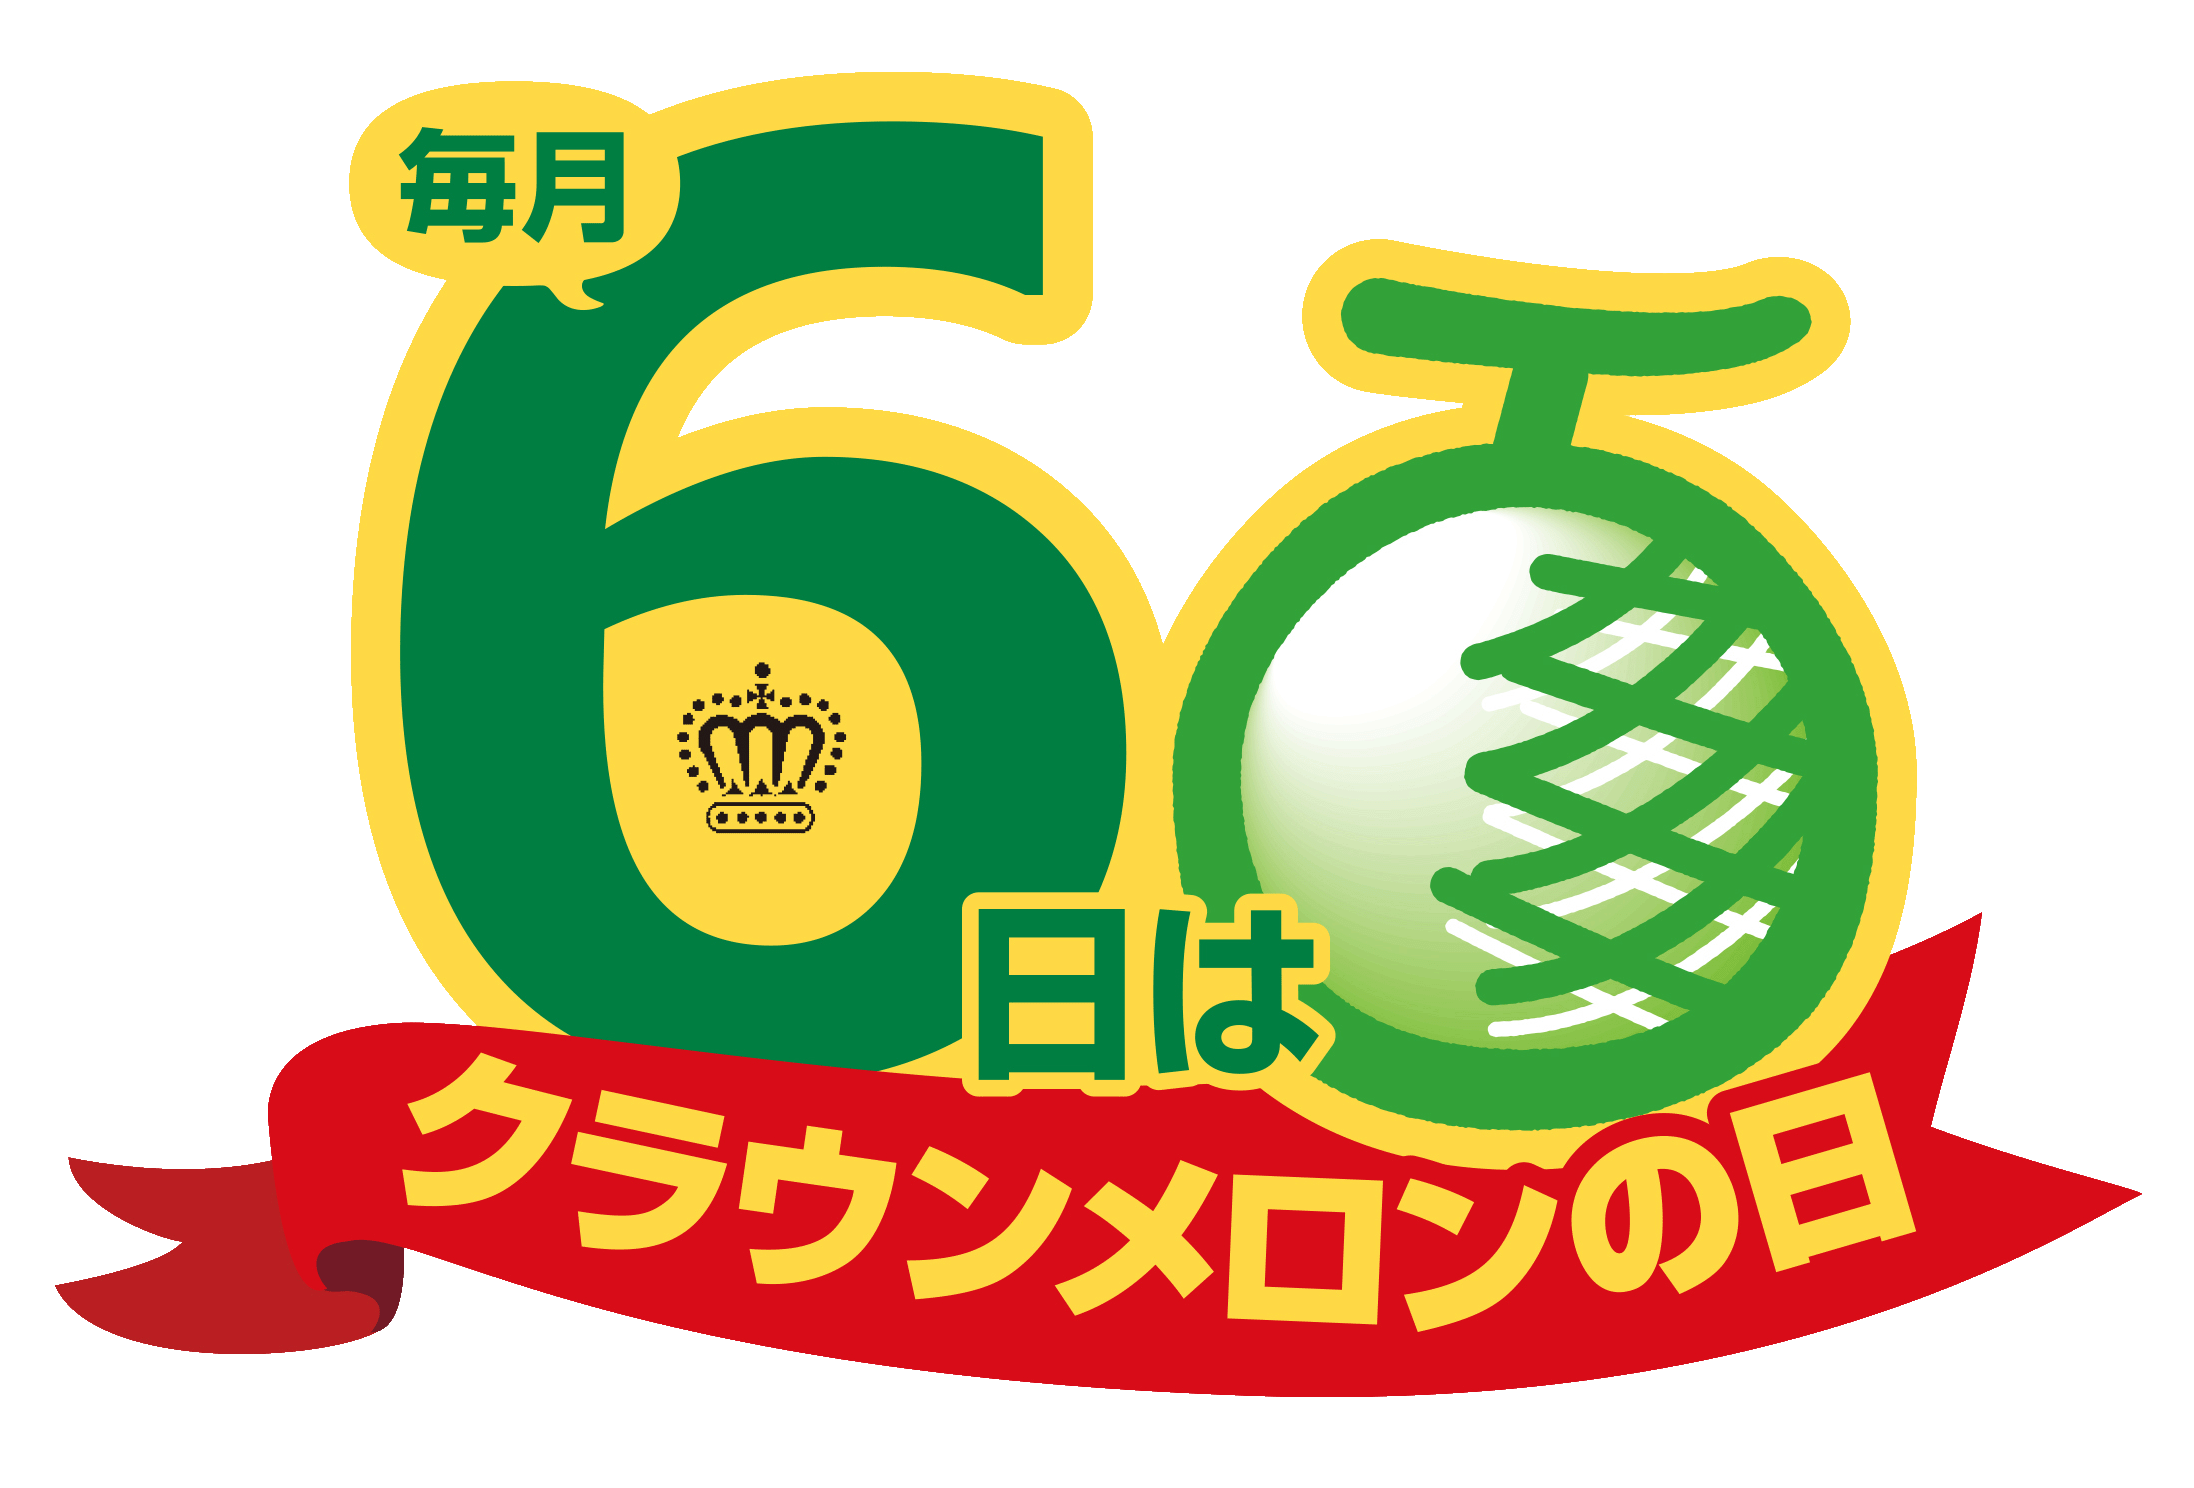 6day-melon-logo